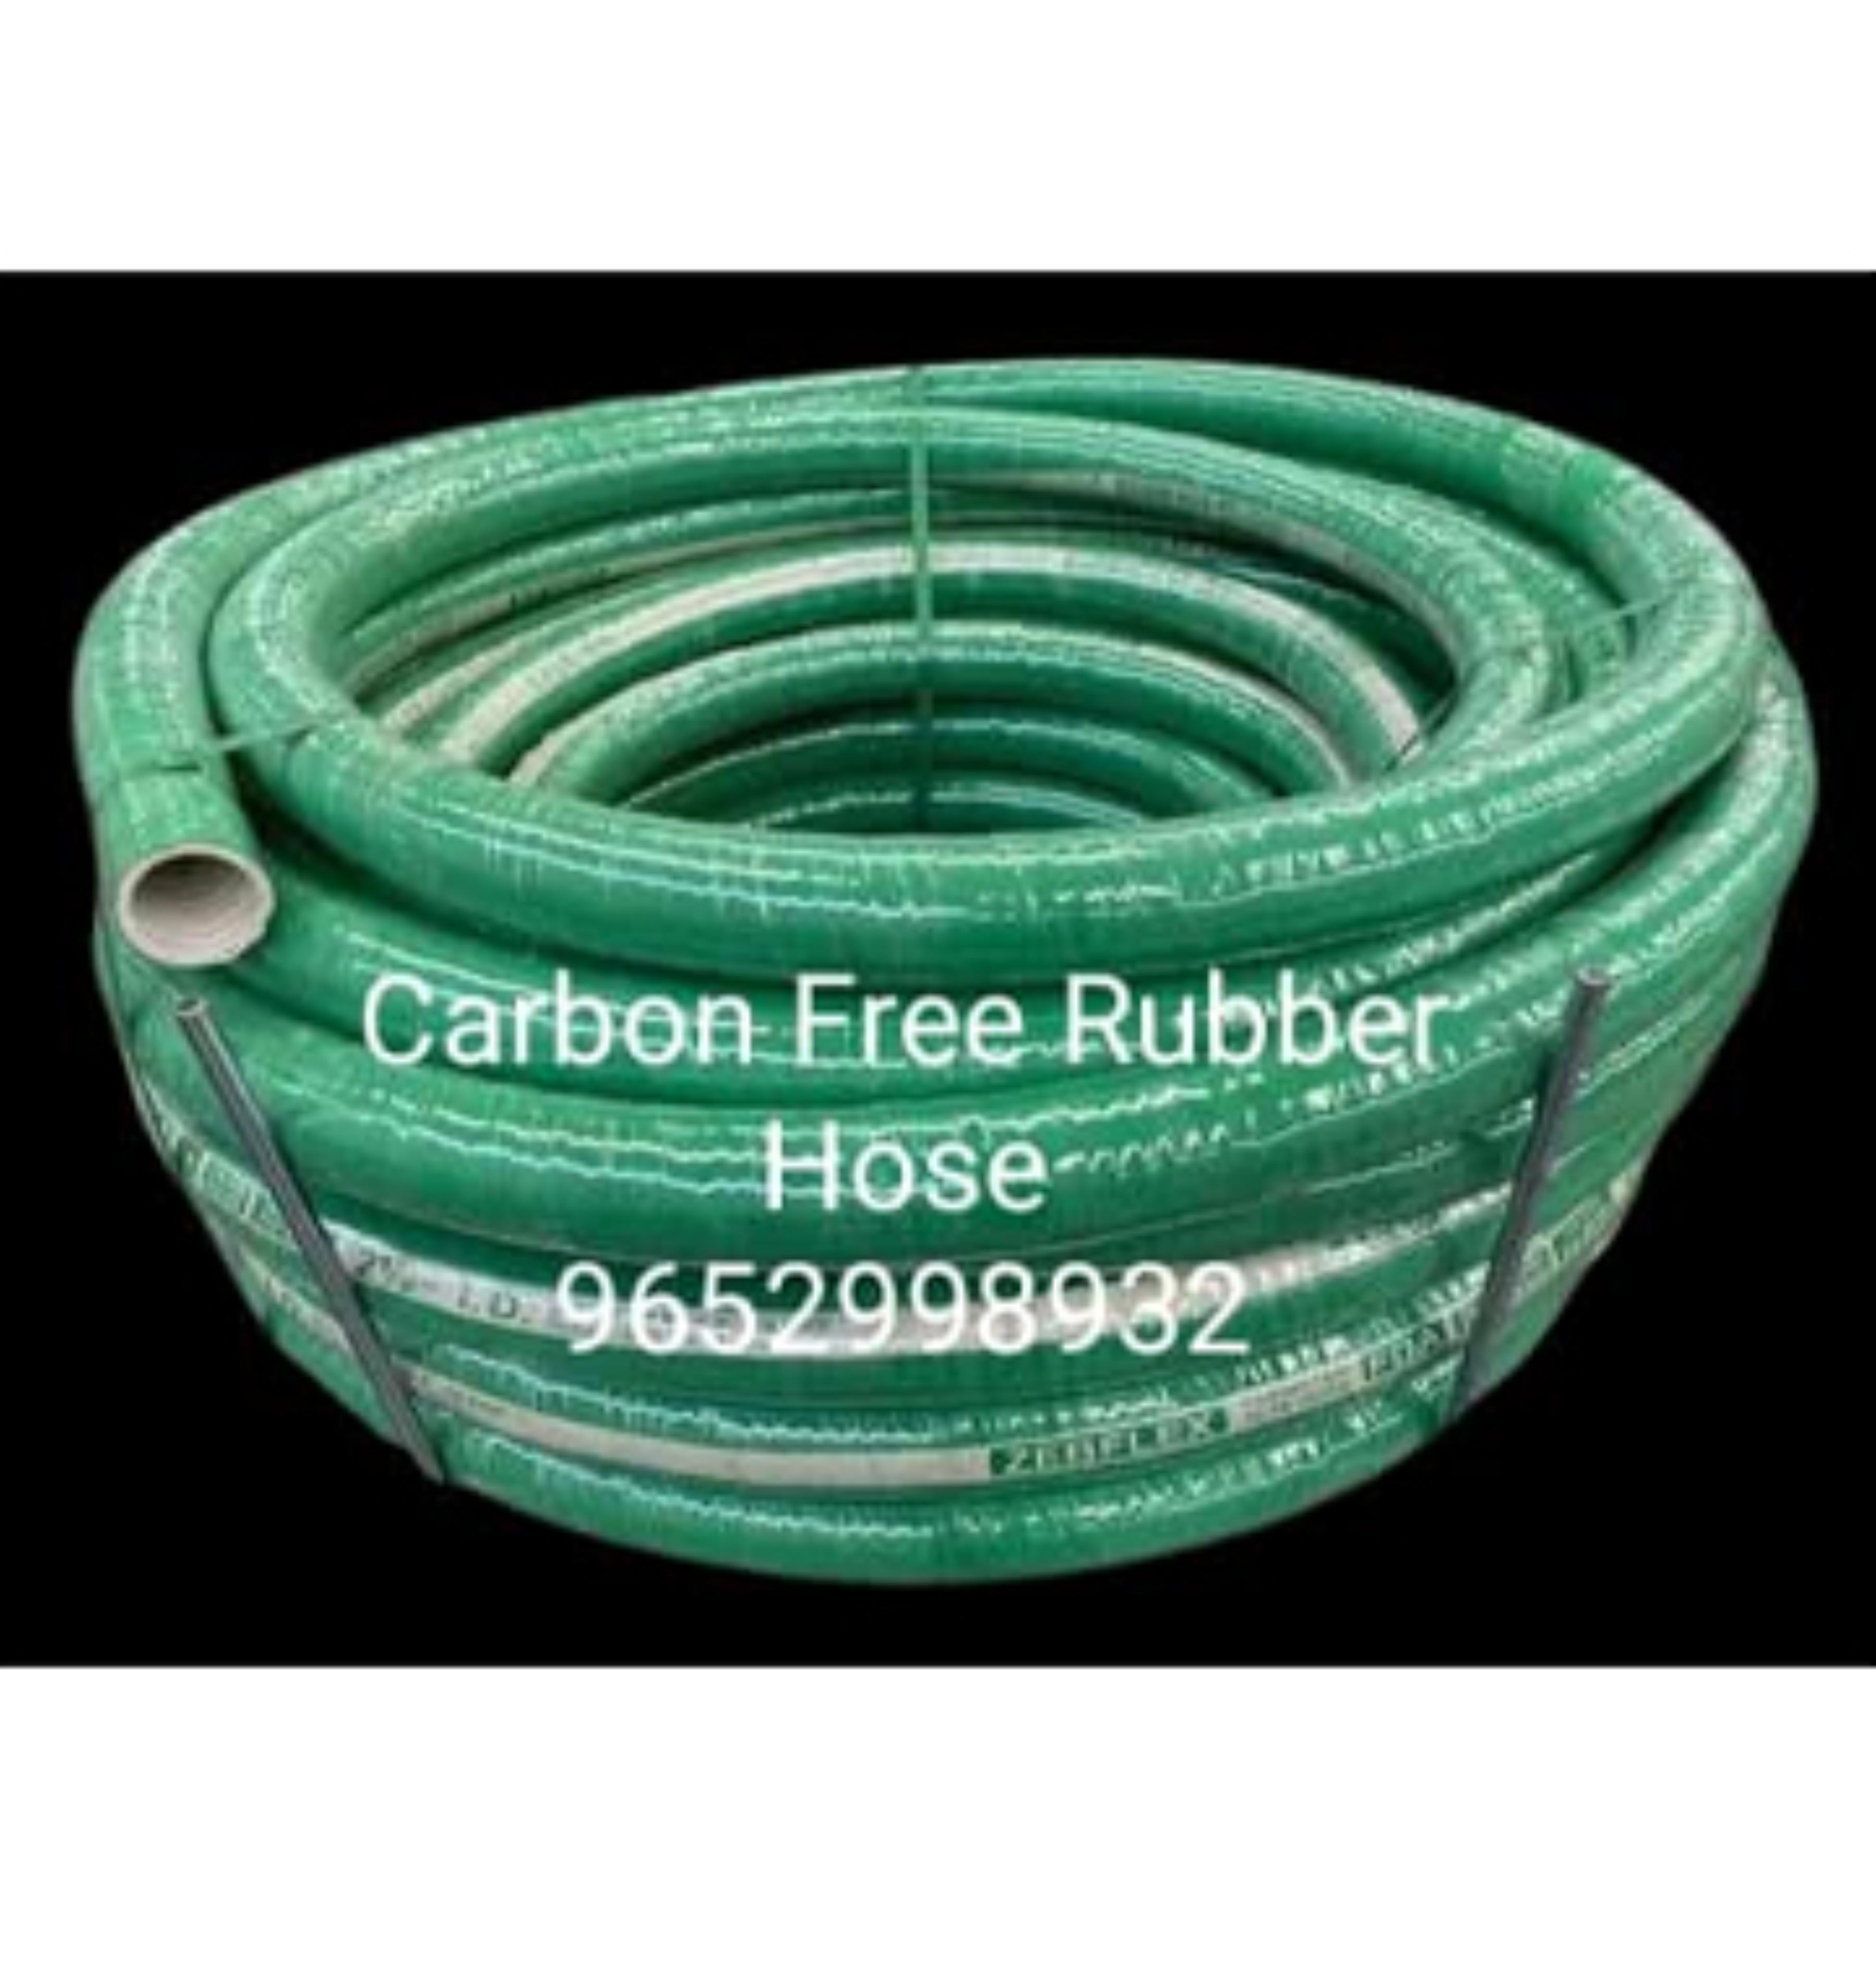 Carbon Free Rubber Hose